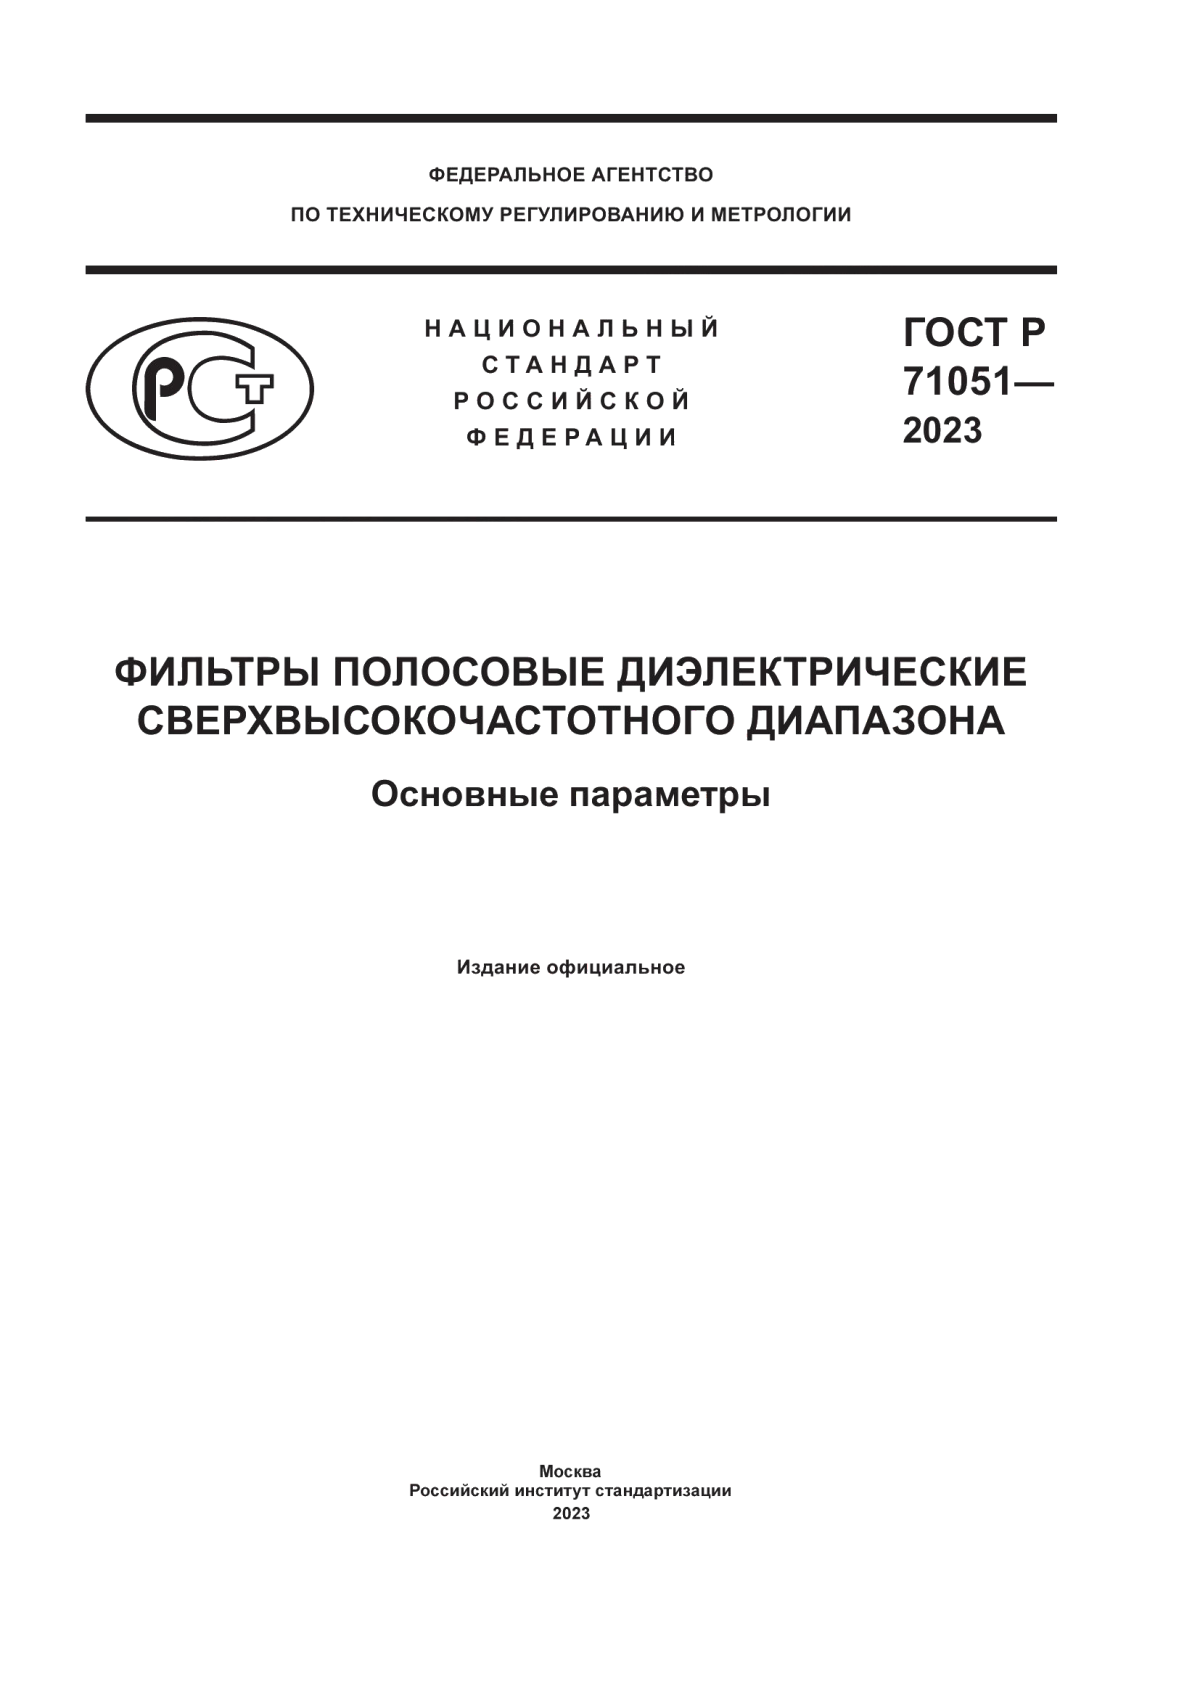 ГОСТ Р 71051-2023 Фильтры полосовые диэлектрические сверхвысокочастотного диапазона. Основные параметры